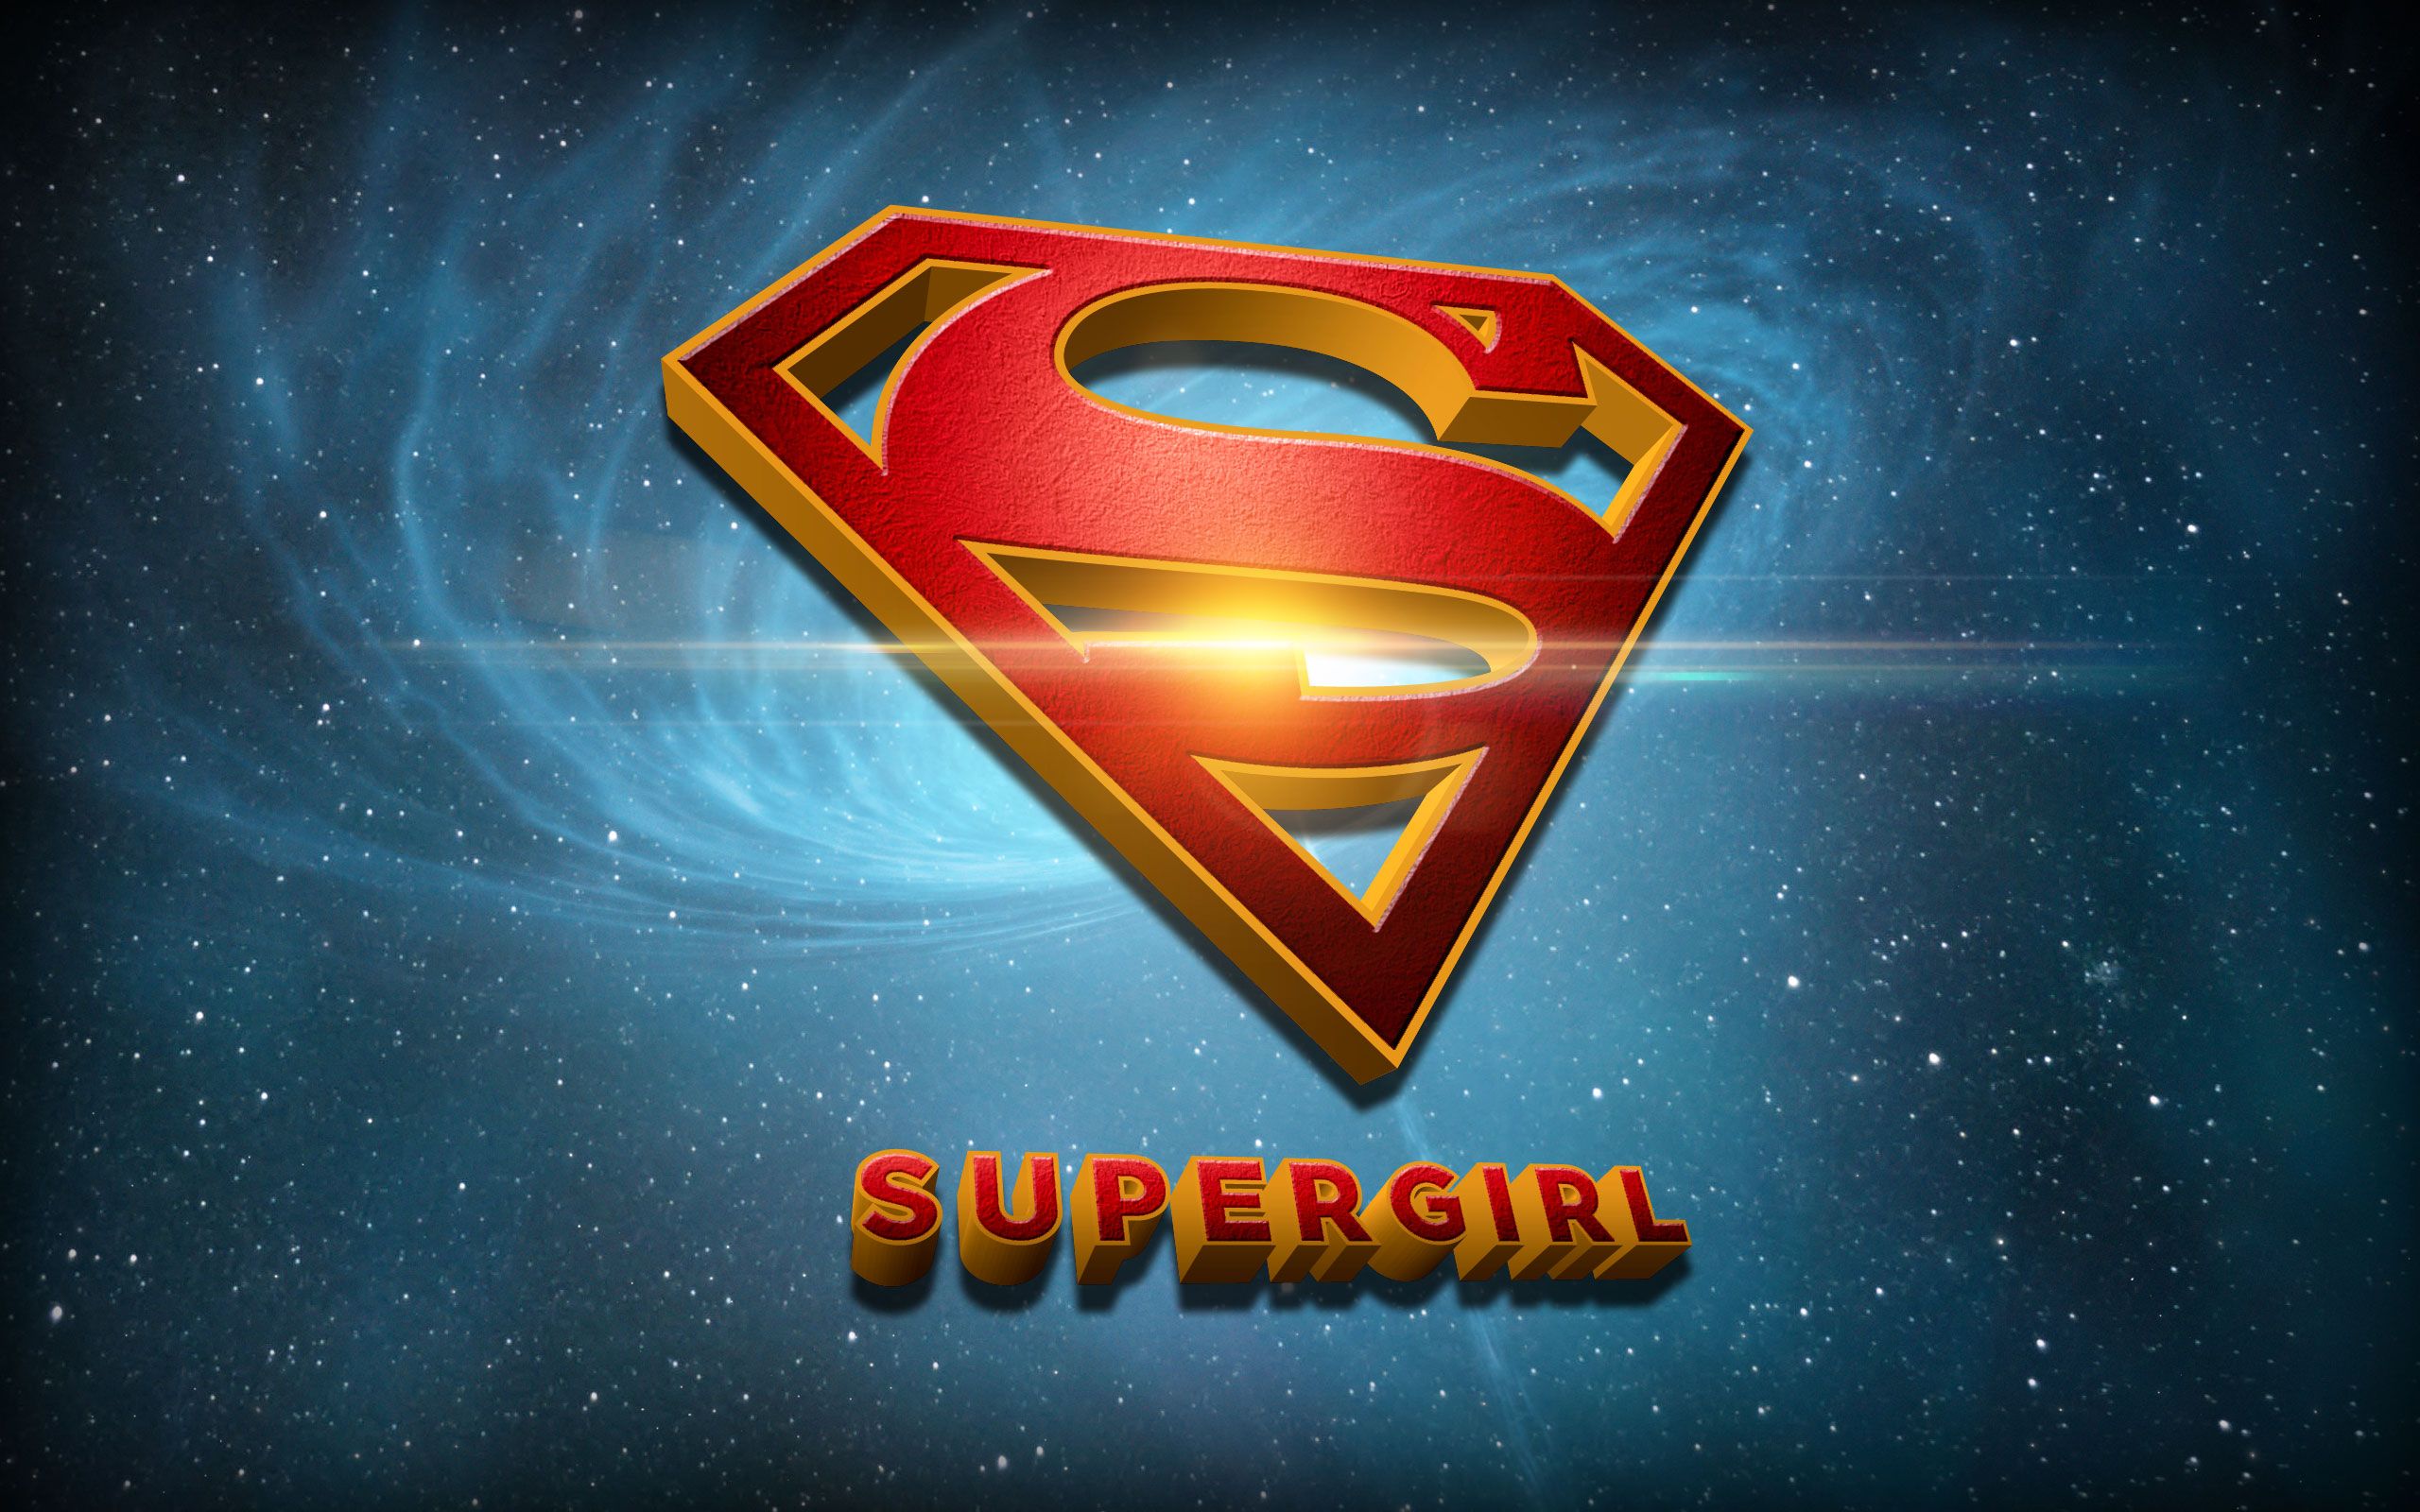 Supergirl HD Wallpaper for desktop download